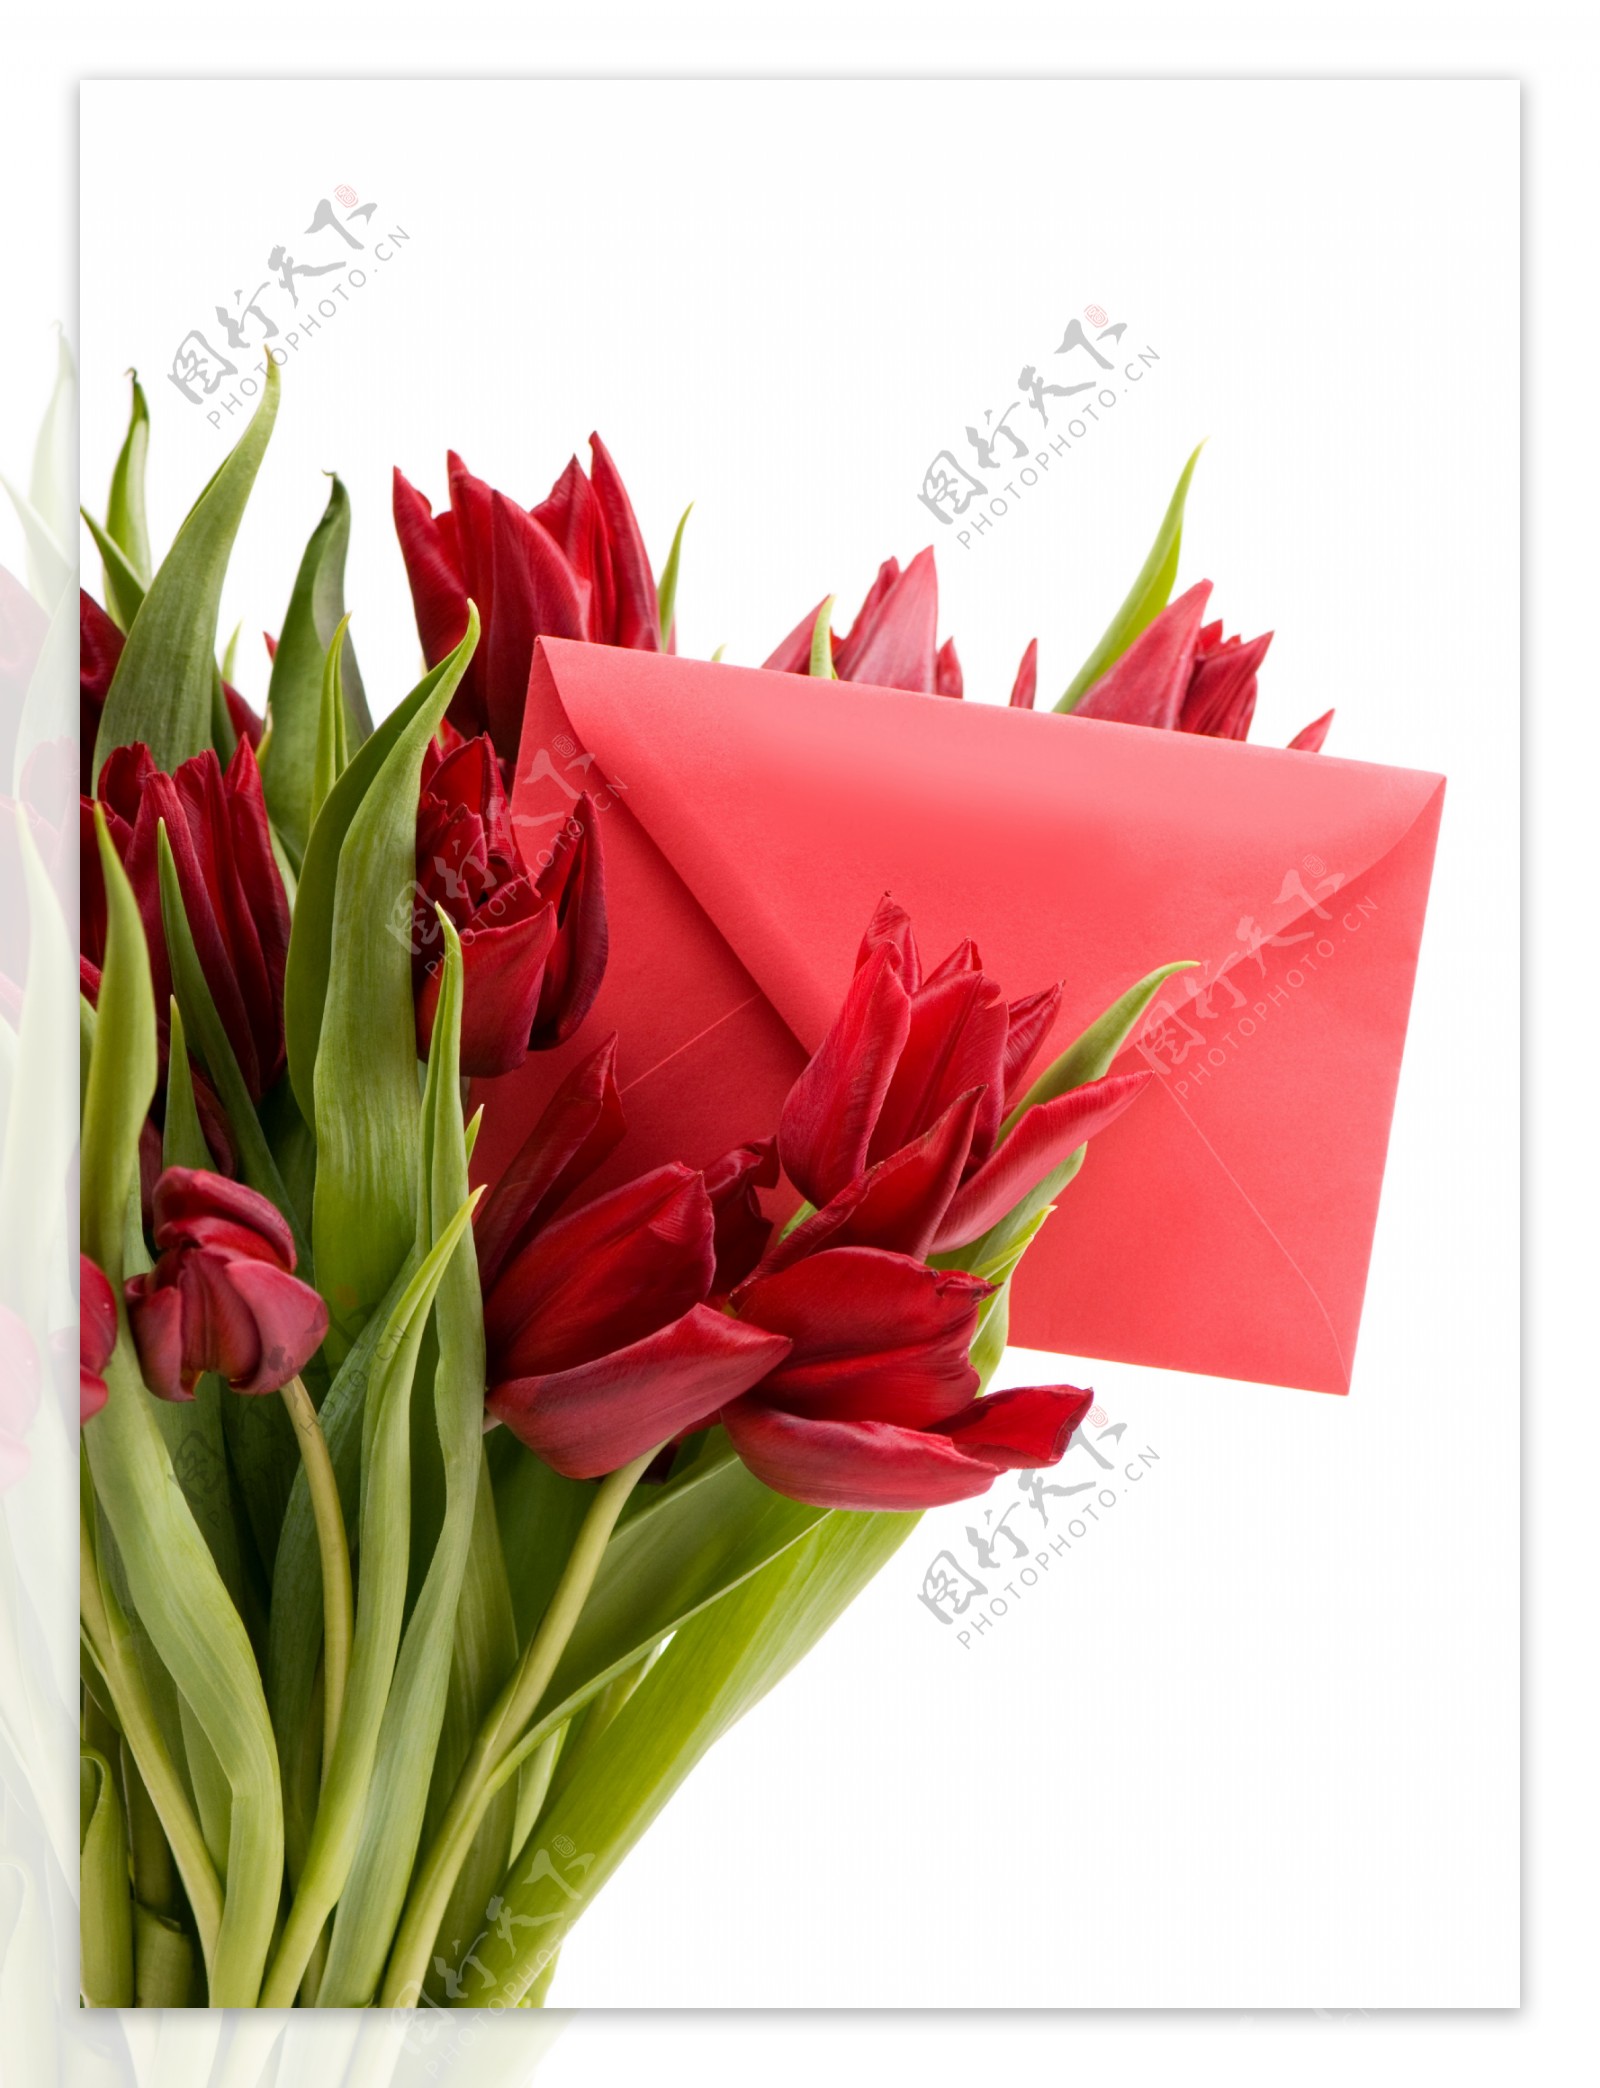 红色信封和郁金香花束图片